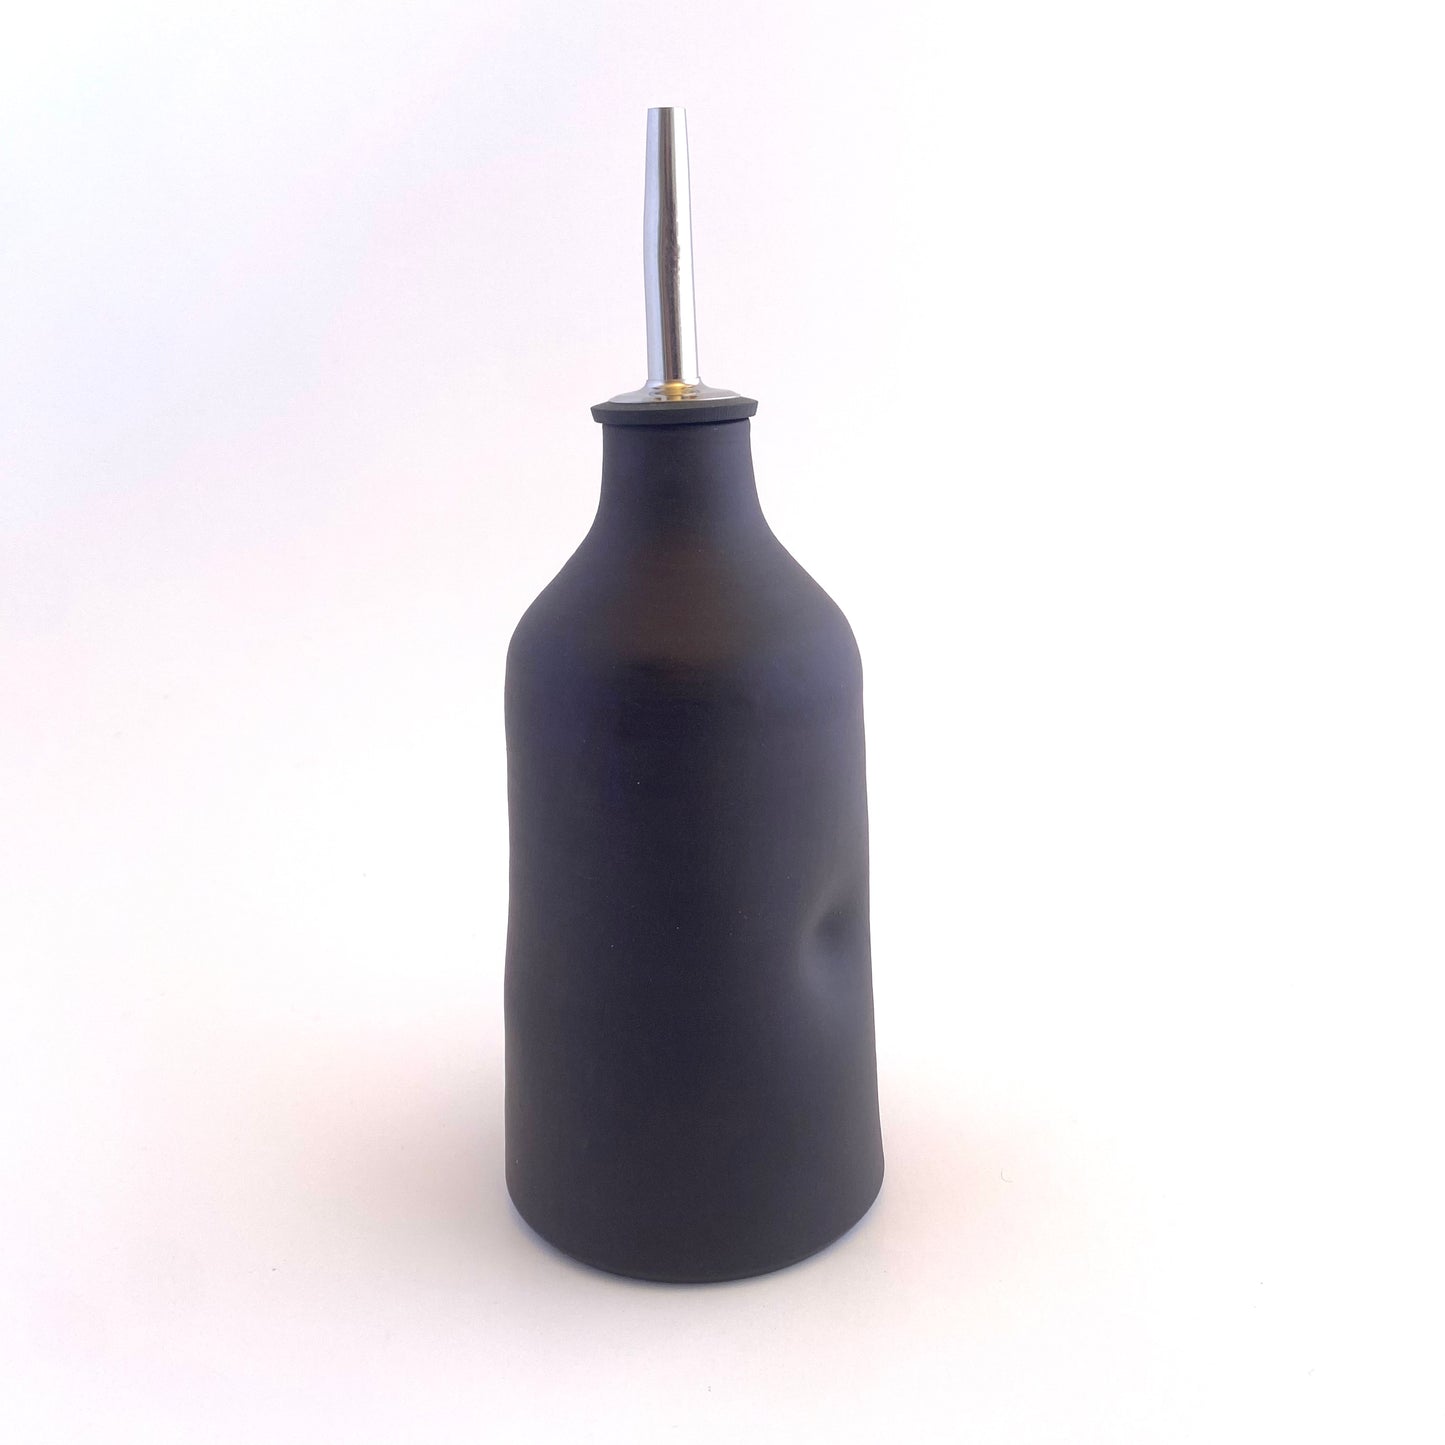 Imprint Olive Oil Vessel in Matte Black